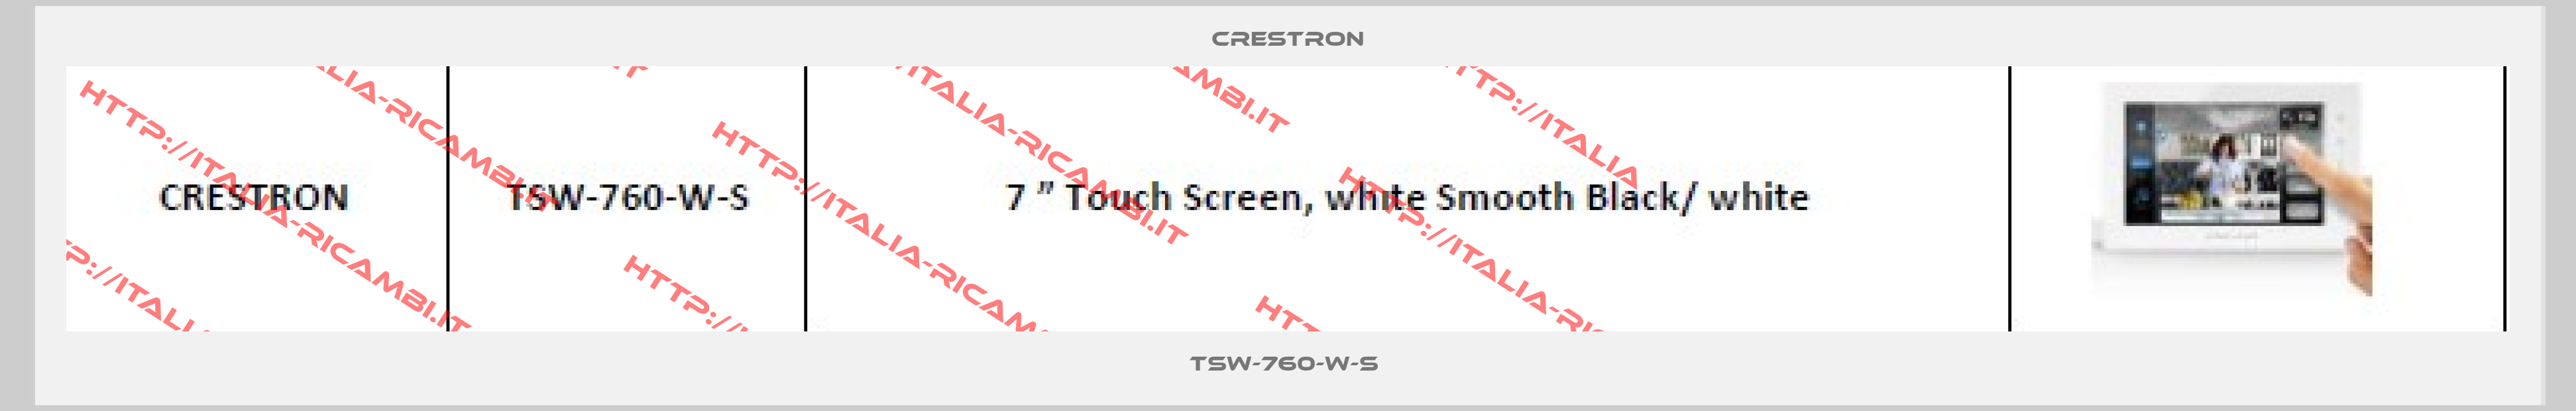 Crestron-TSW-760-W-S 